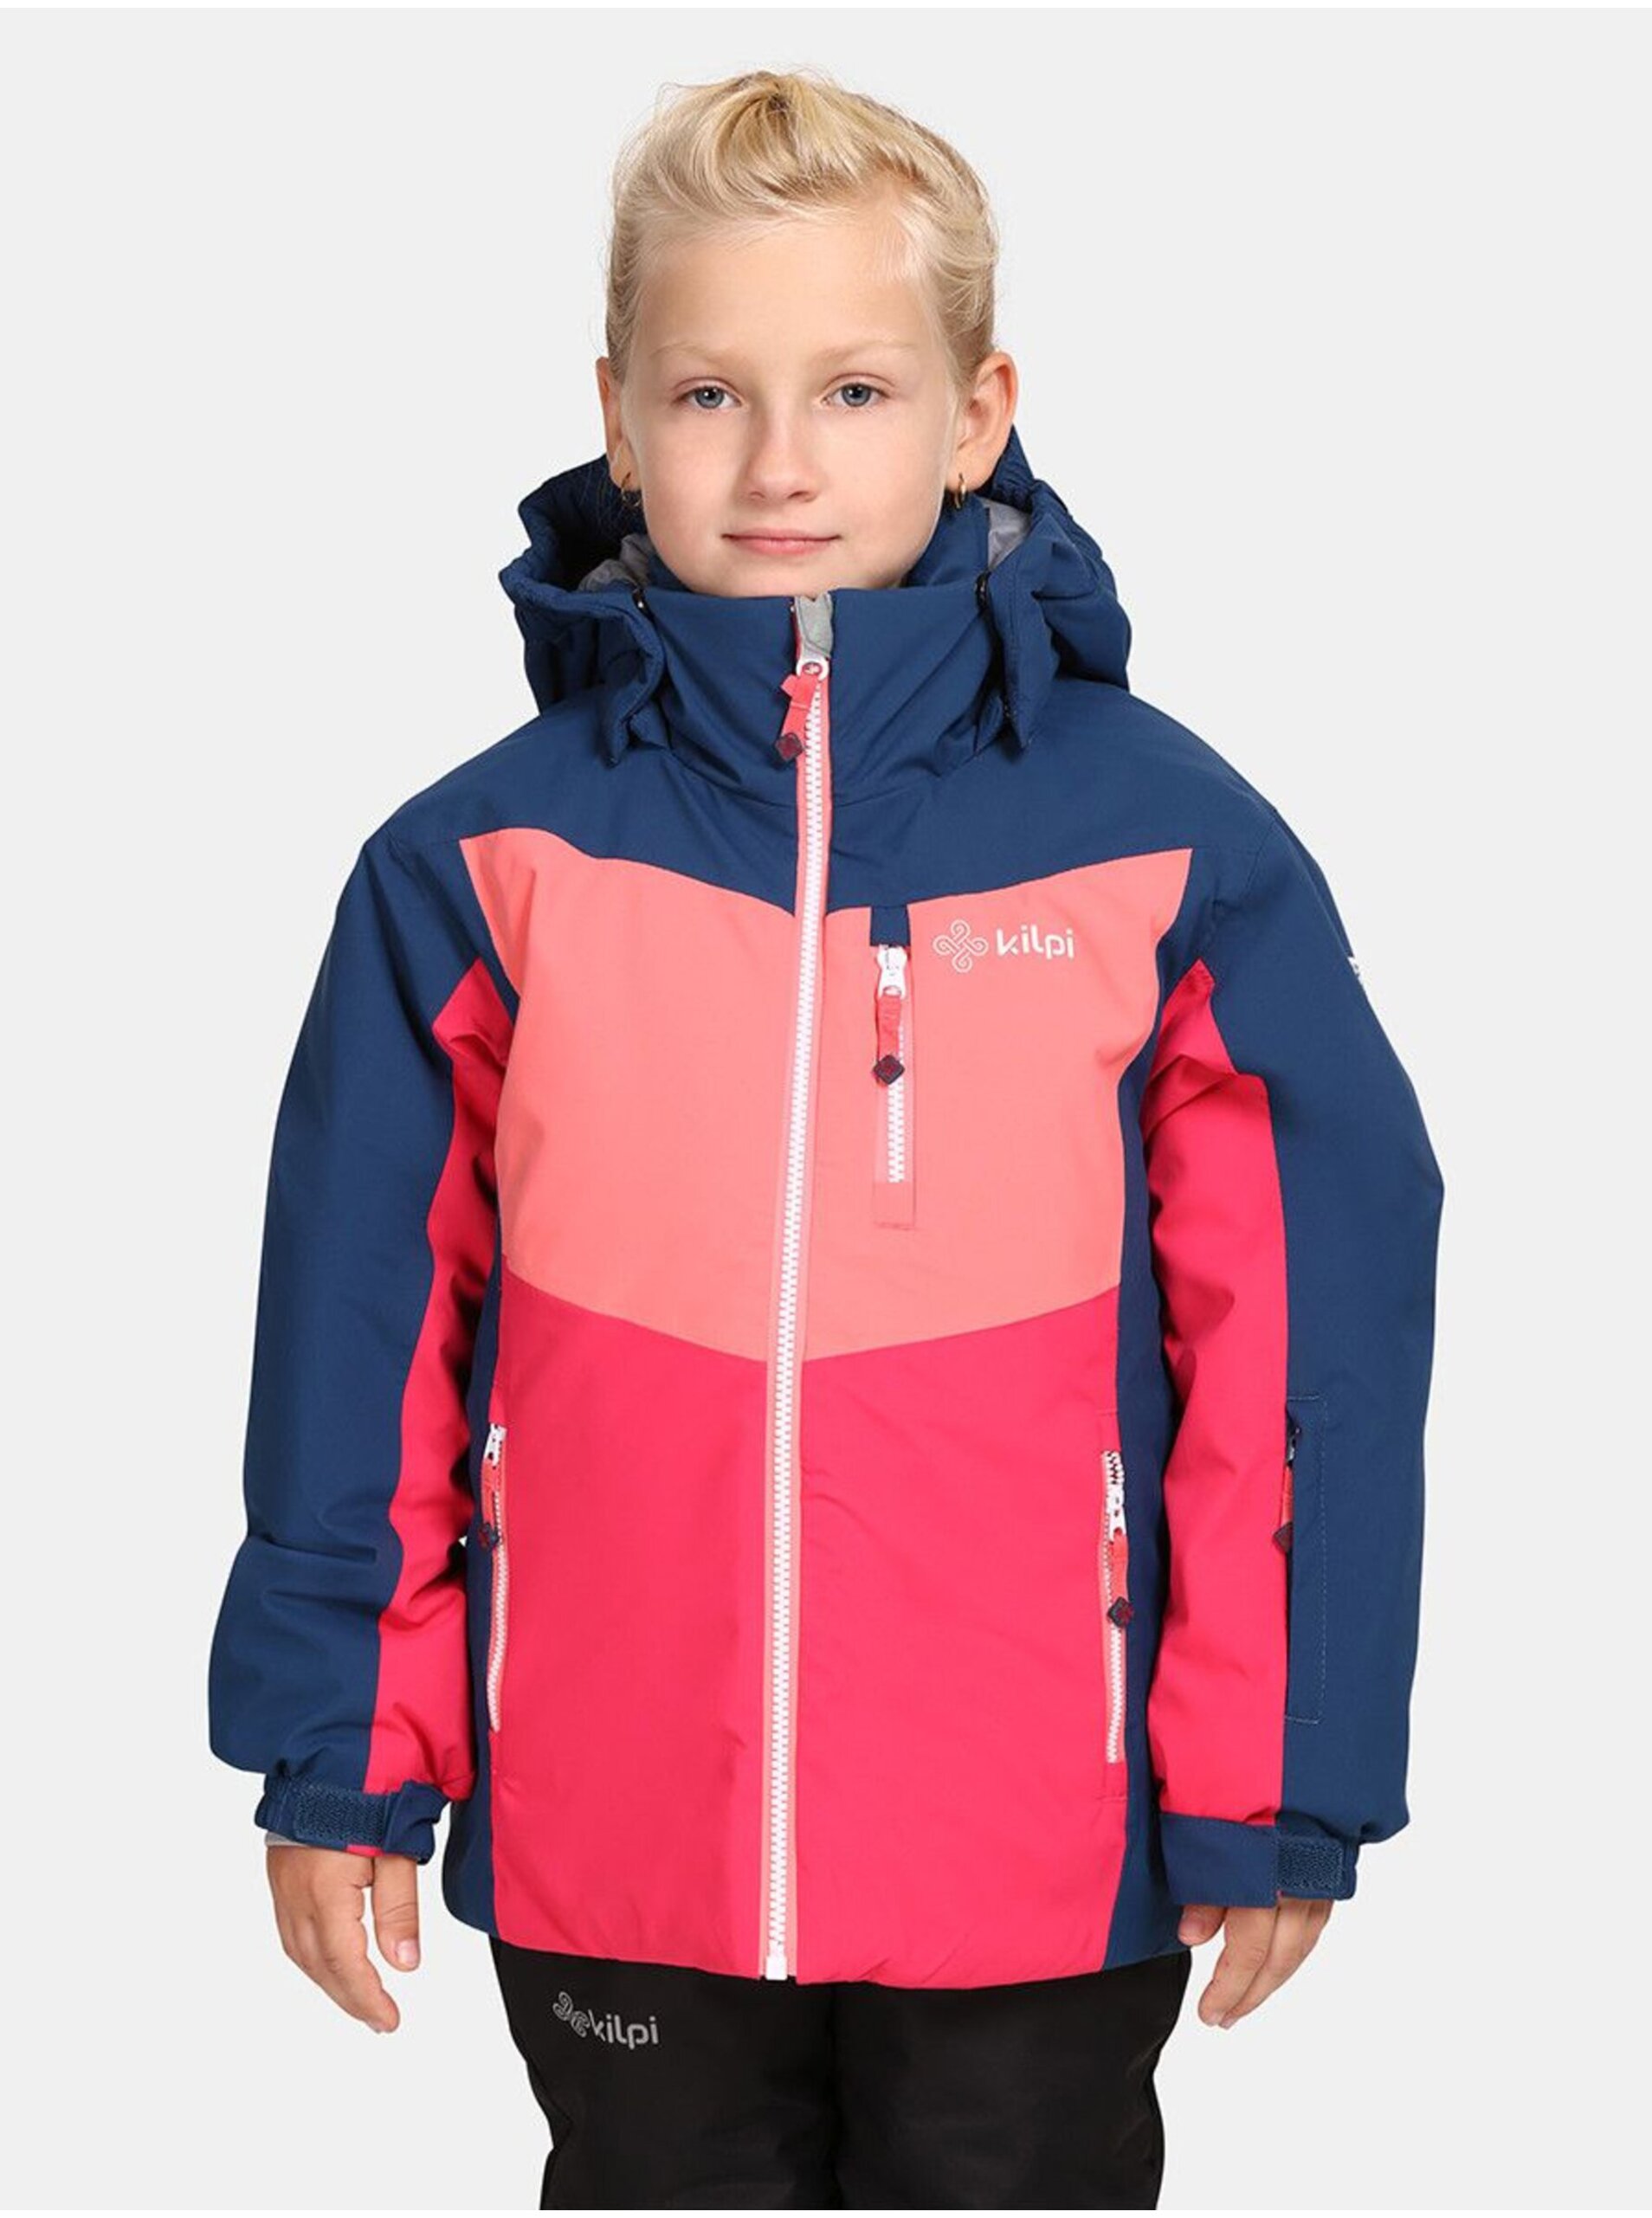 Lacno Ružovo-modrá dievčenská lyžiarska bunda Kilpi Valera-JG